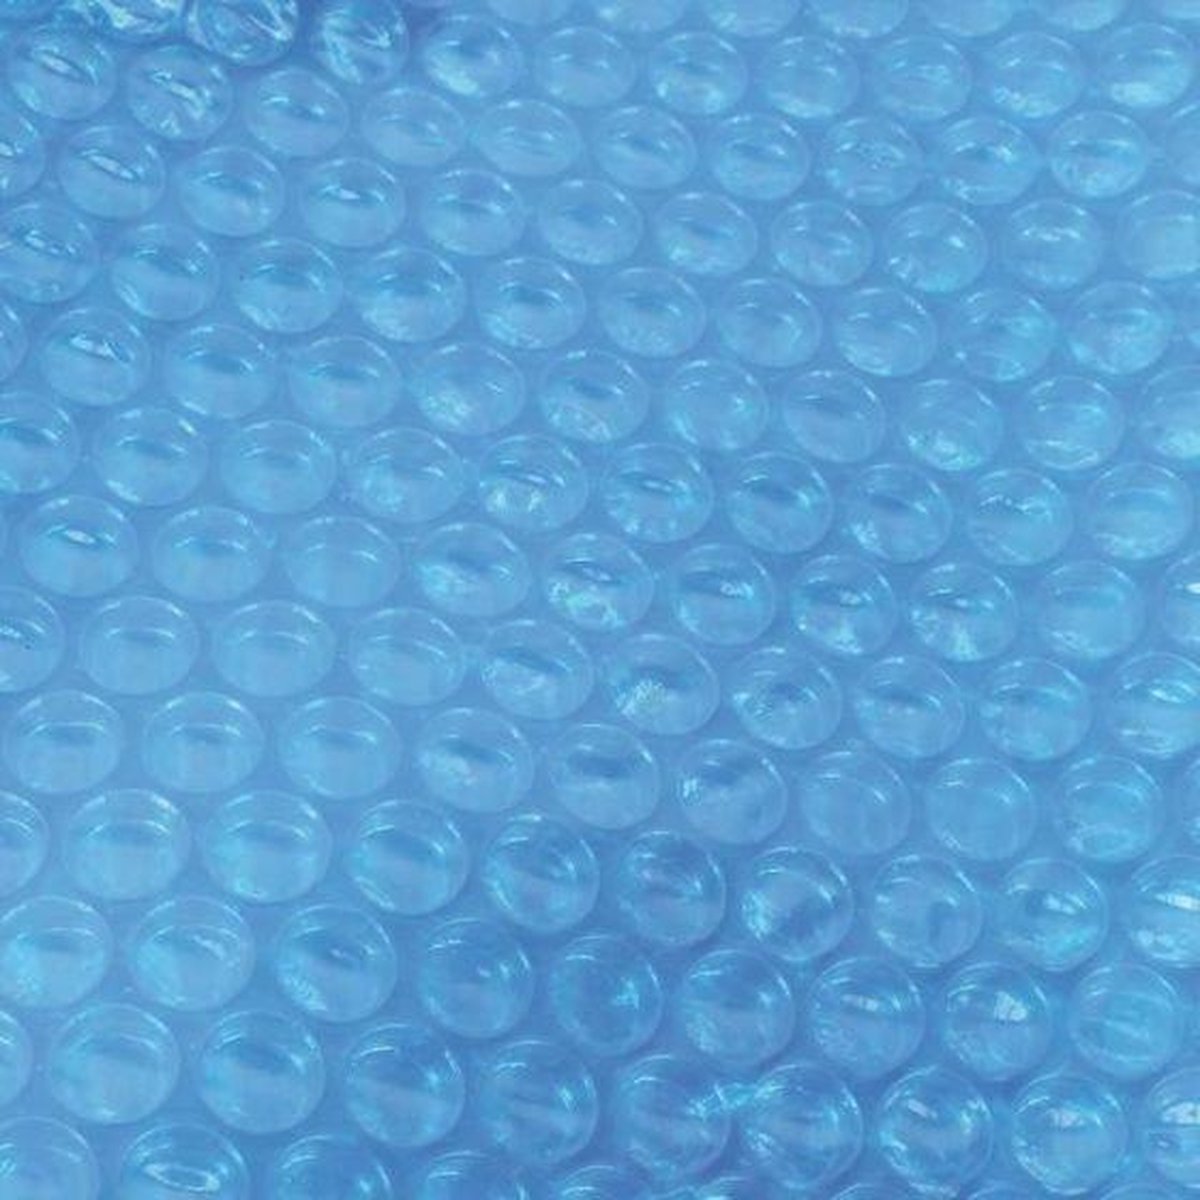 Comfortpool Solarzeil 956x488 cm noppenfolie